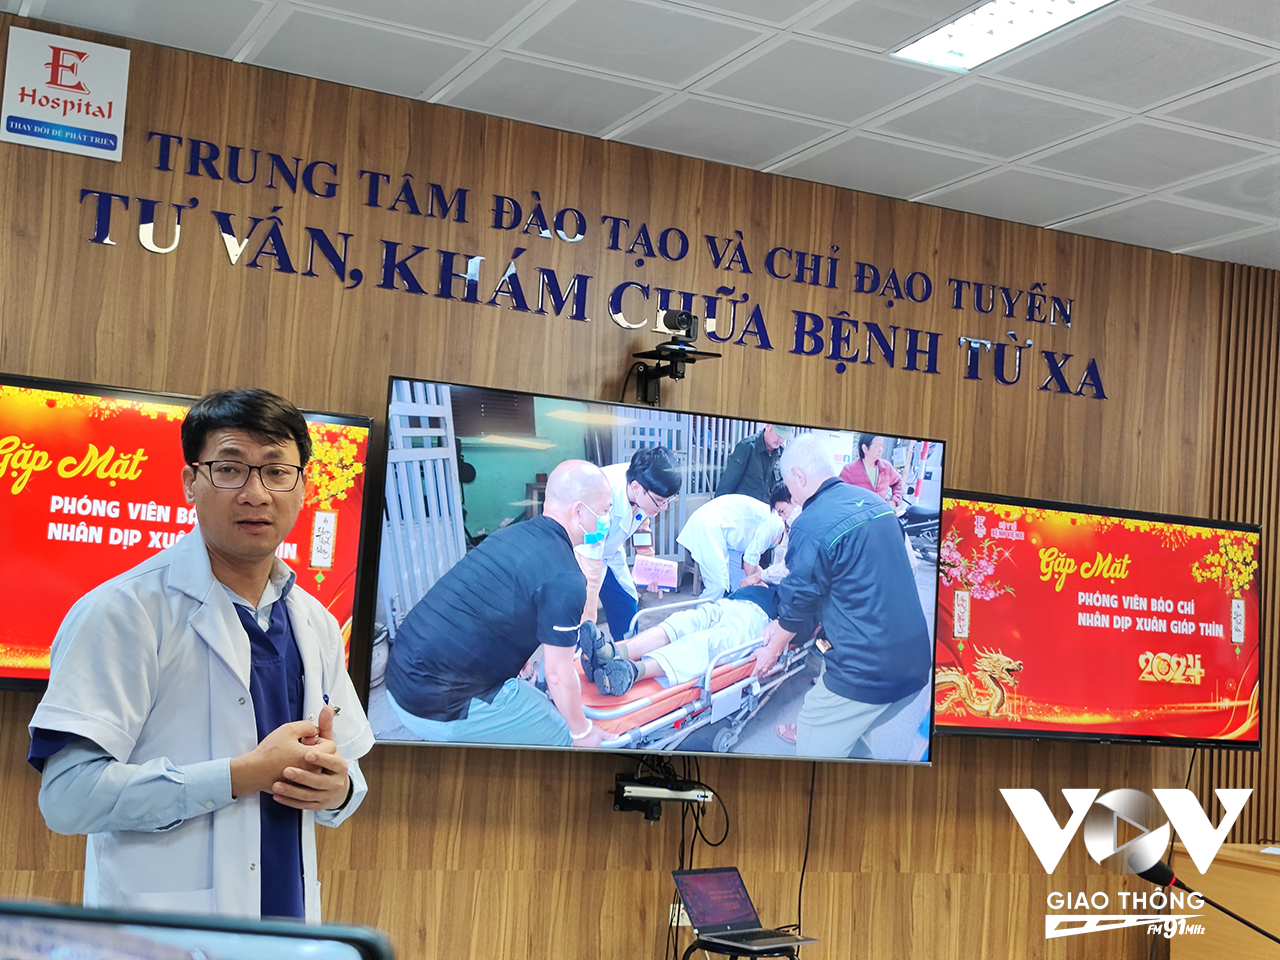 Bác sĩ Nguyễn Công Hựu, Giám đốc bệnh viện E chia sẻ, tỉ lệ thanh toán không dùng tiền mặt qua QR code tại bệnh viện đã đạt 50%, giúp giảm tải rất lớn cho bộ phận tài chính kế toán